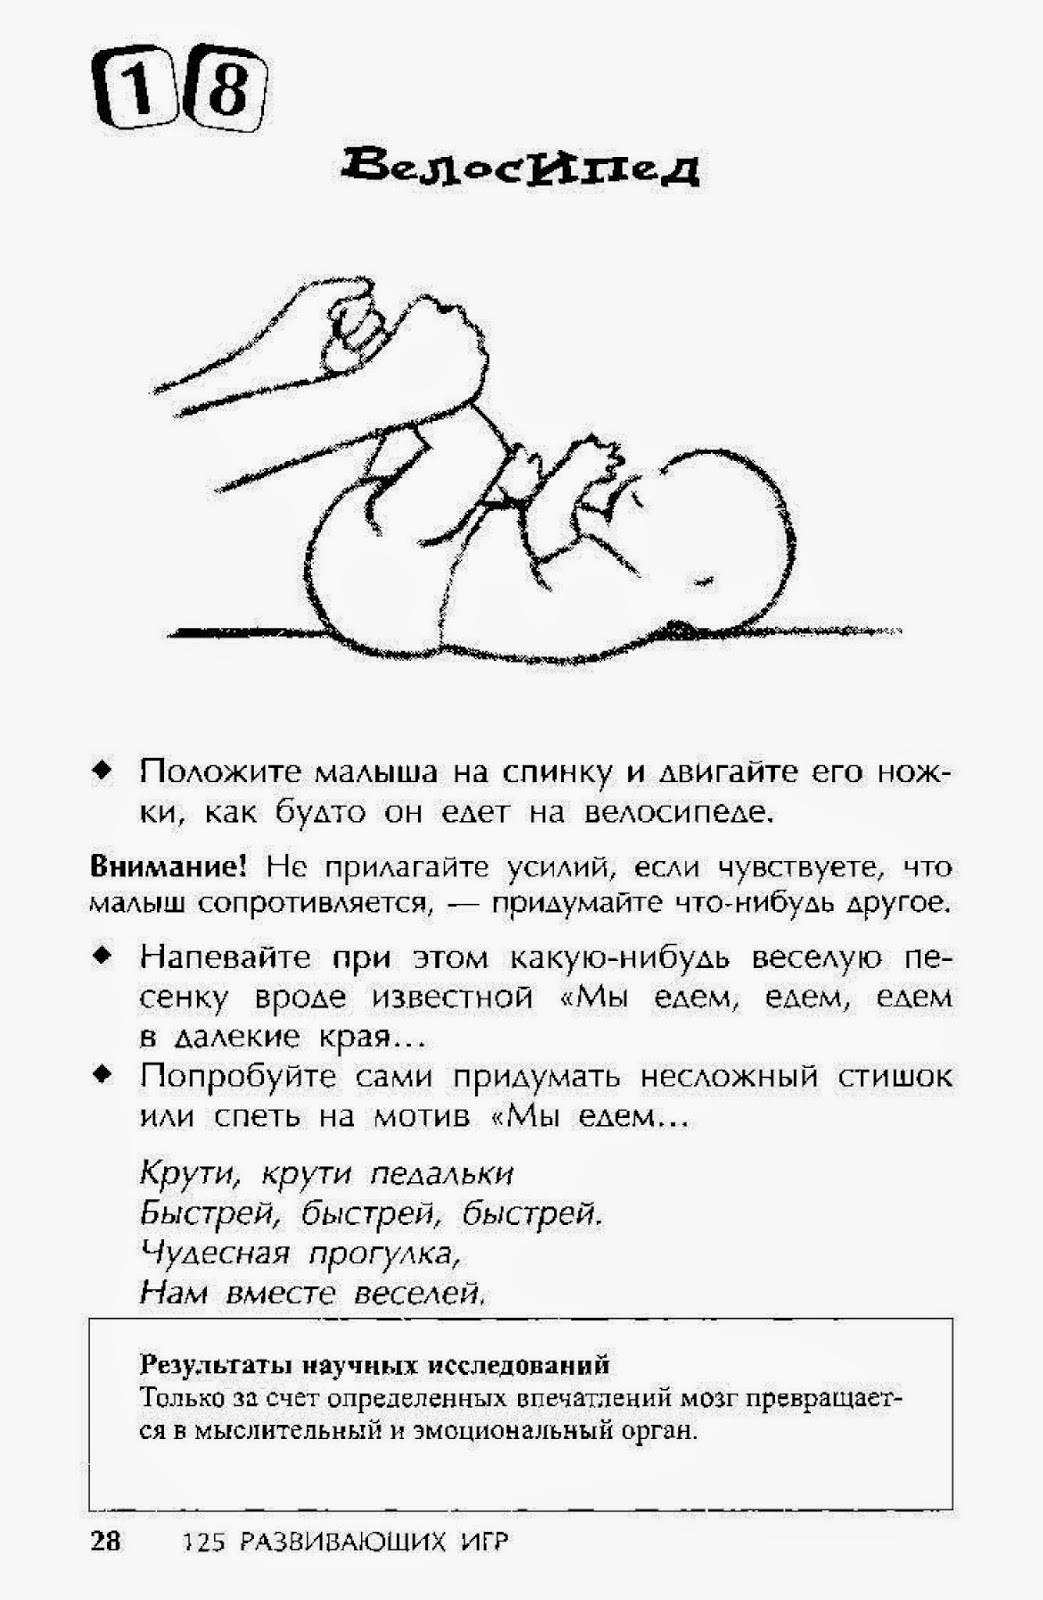 Как уложить спать 3 года. Как можно ребенка уложить спать. Укладываем ребёнка спать новорожденного. Уложить ребенка спать в 3 месяца. Как ложить ребенка в 3 месяца.